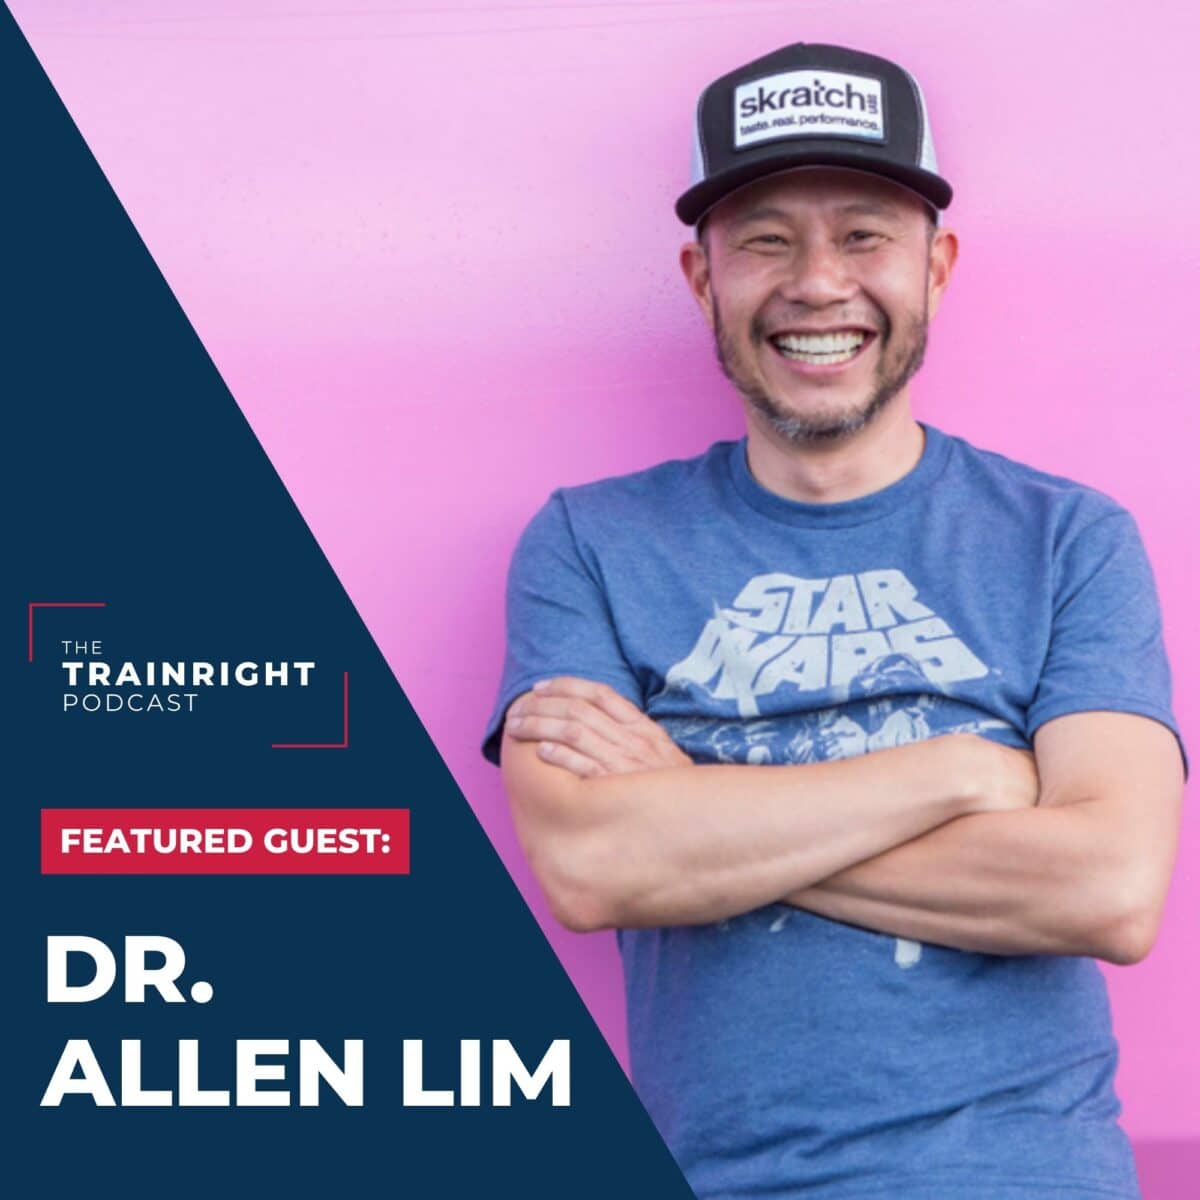 Dr. Allen Lim